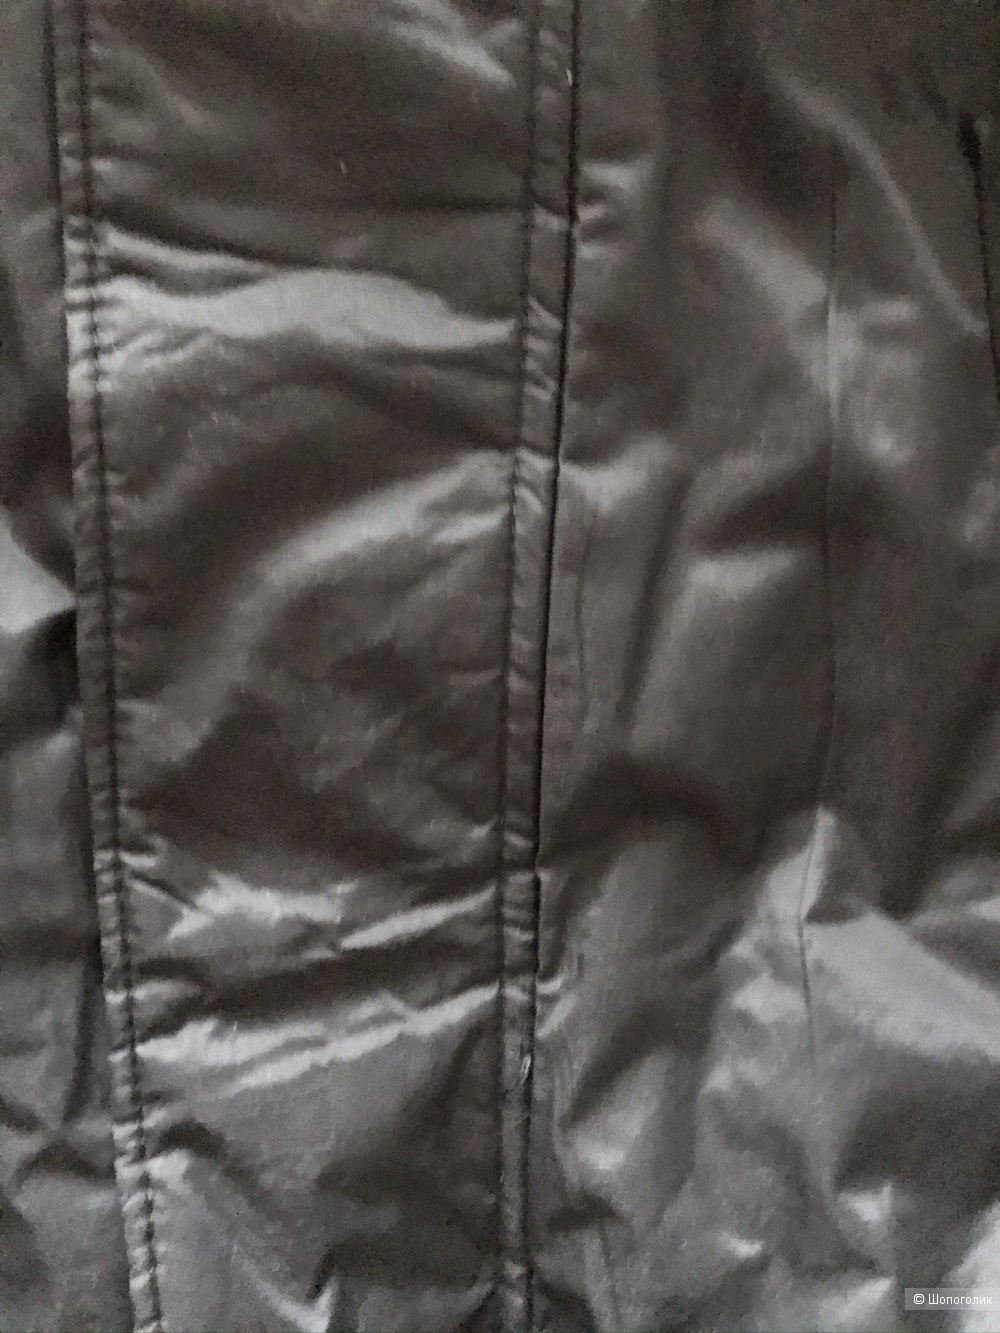 Куртка фирма Sparco размер 50-52